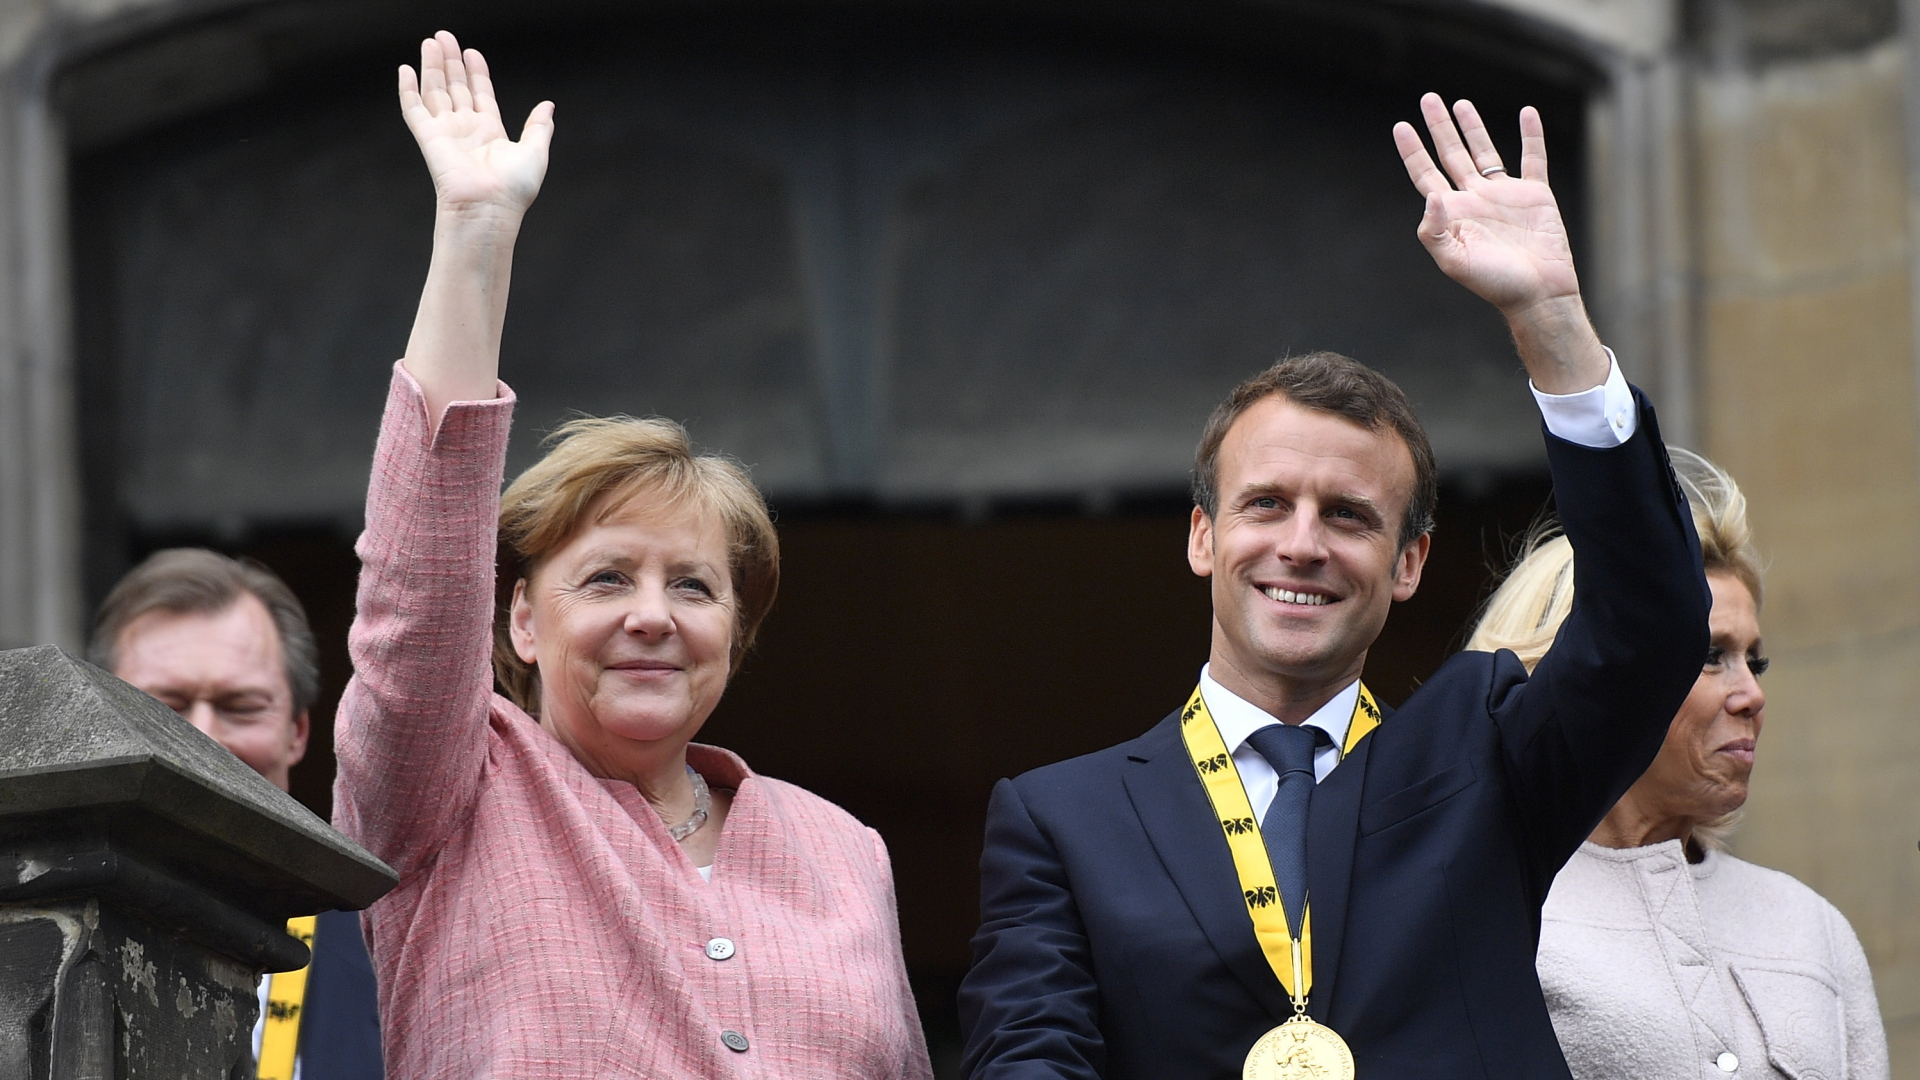 Bundeskanzlerin Angela Merkel (CDU), und der französische Staatspräsident Emmanuel Macron winken nach der Verleihung des Karlspreises an Macron von dem Balkon des Rathauses.  | Bildquelle: dpa